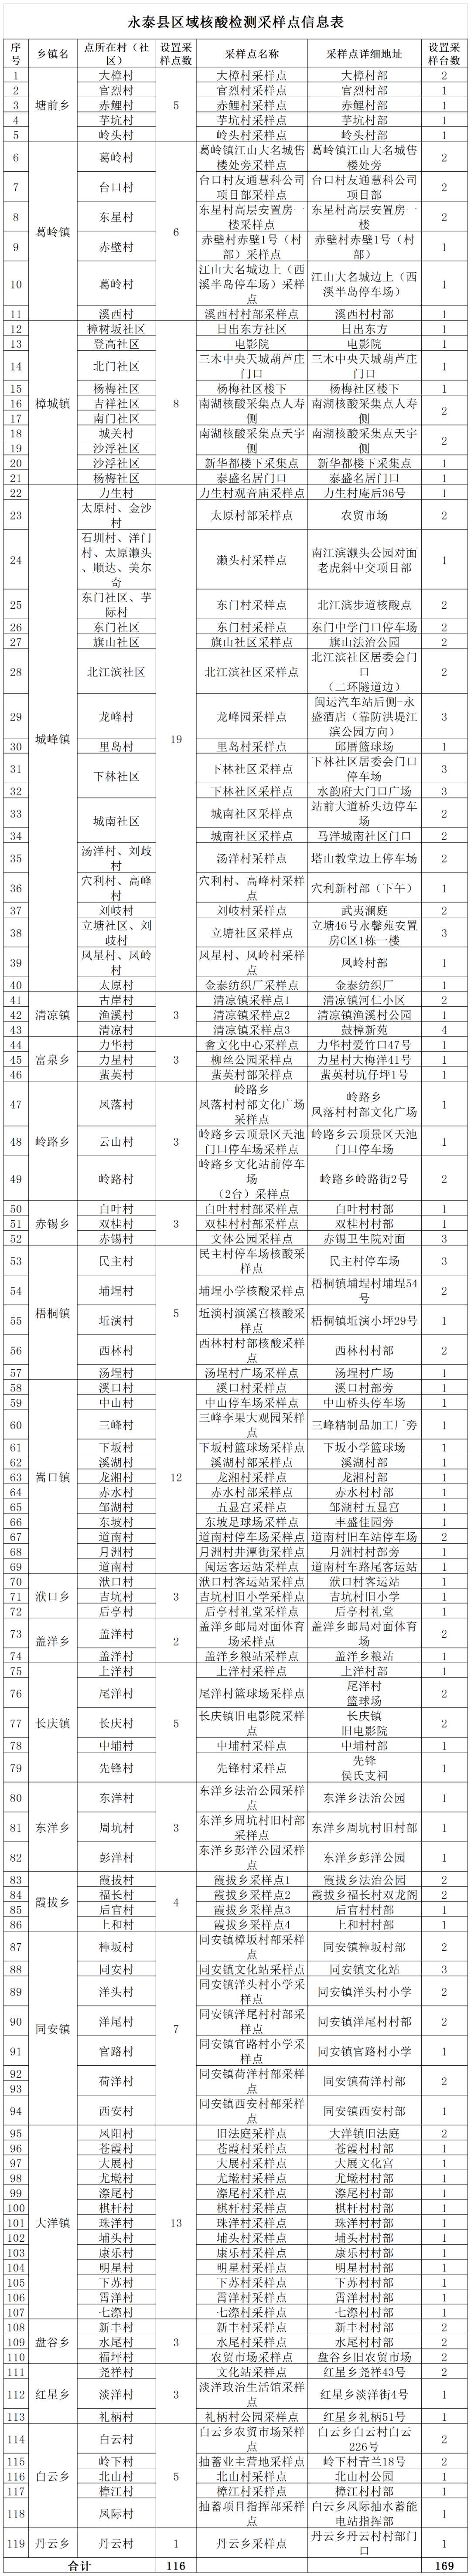 永泰县新冠肺炎防控工作指挥部发布第15号通告